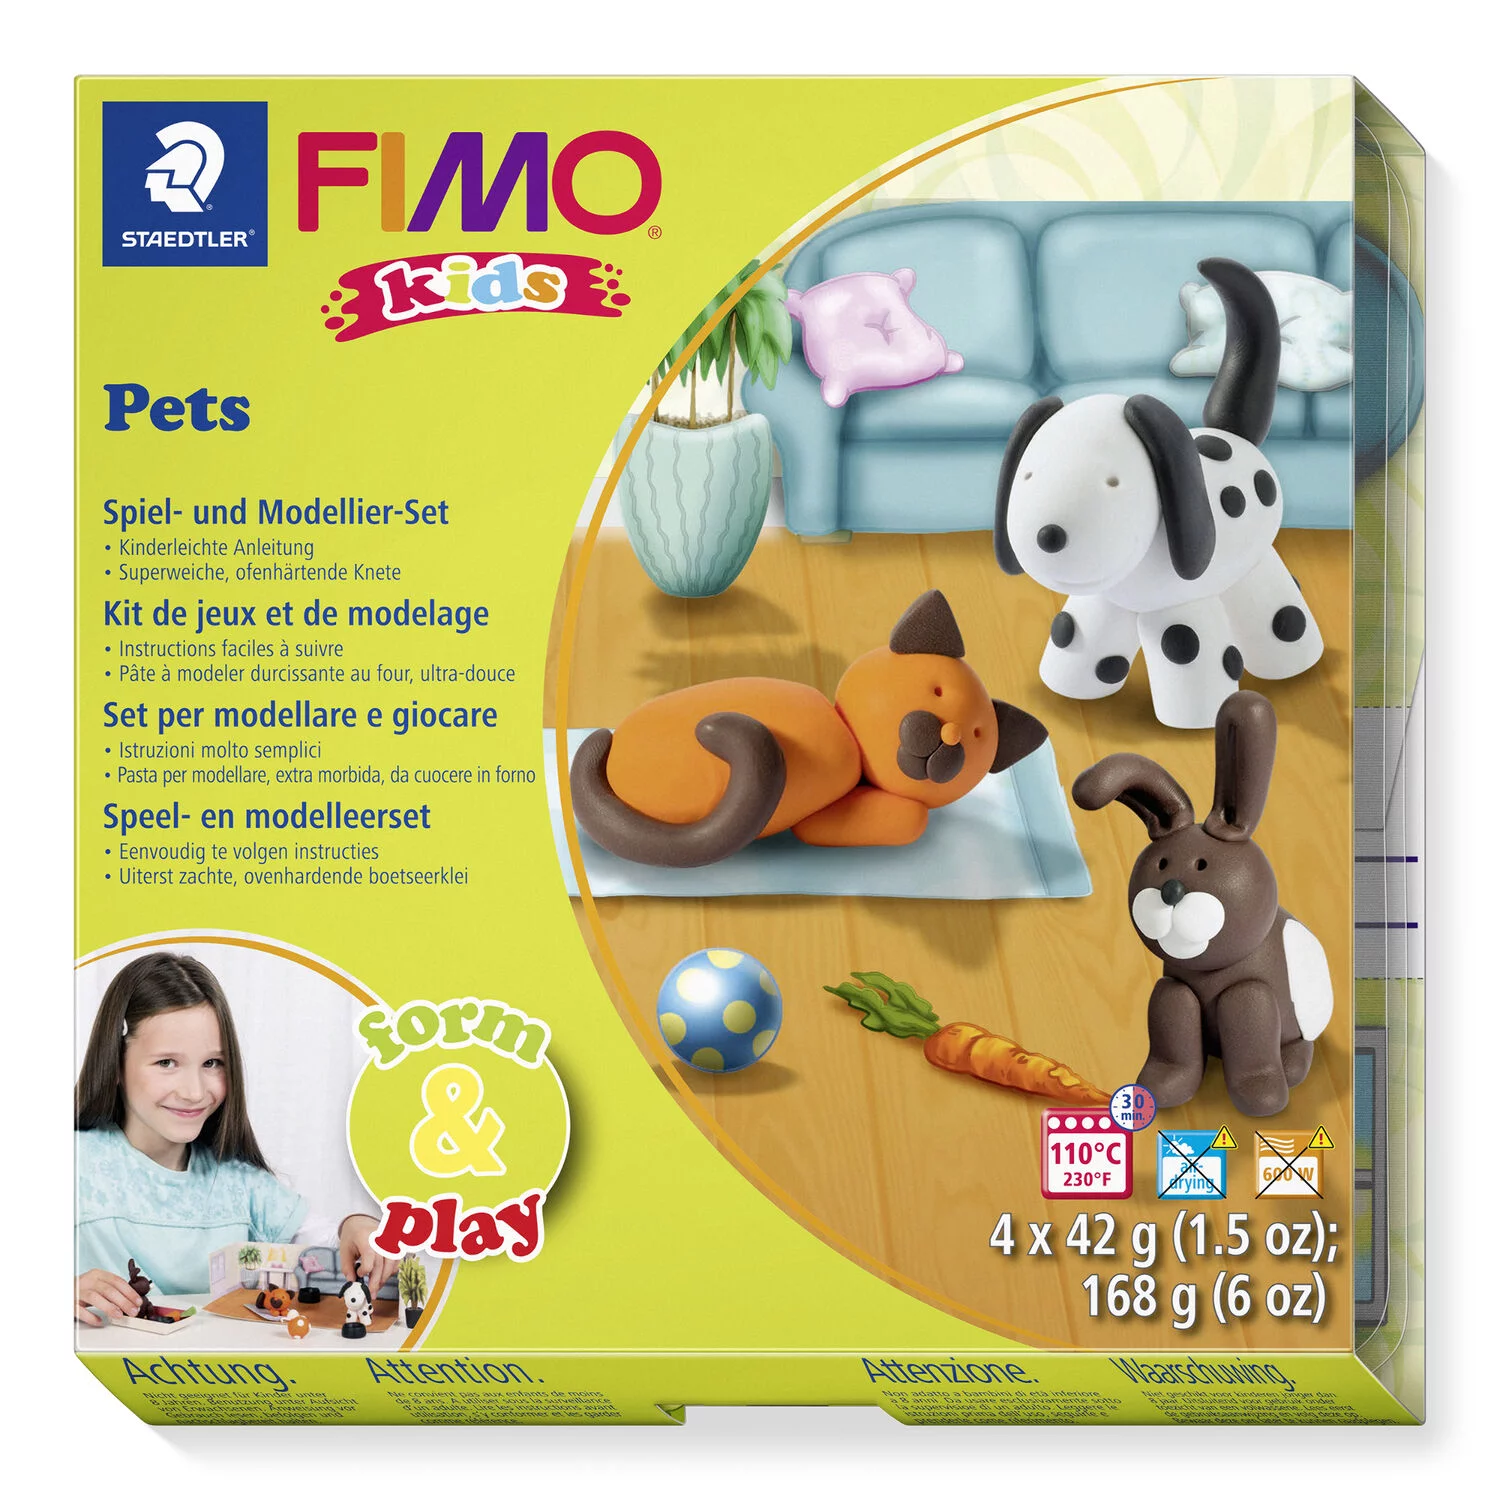 STAEDTLER 8034 02 LY - Fimo kids Set Pets - ofenhärtende Modelliermasse, 4x42g